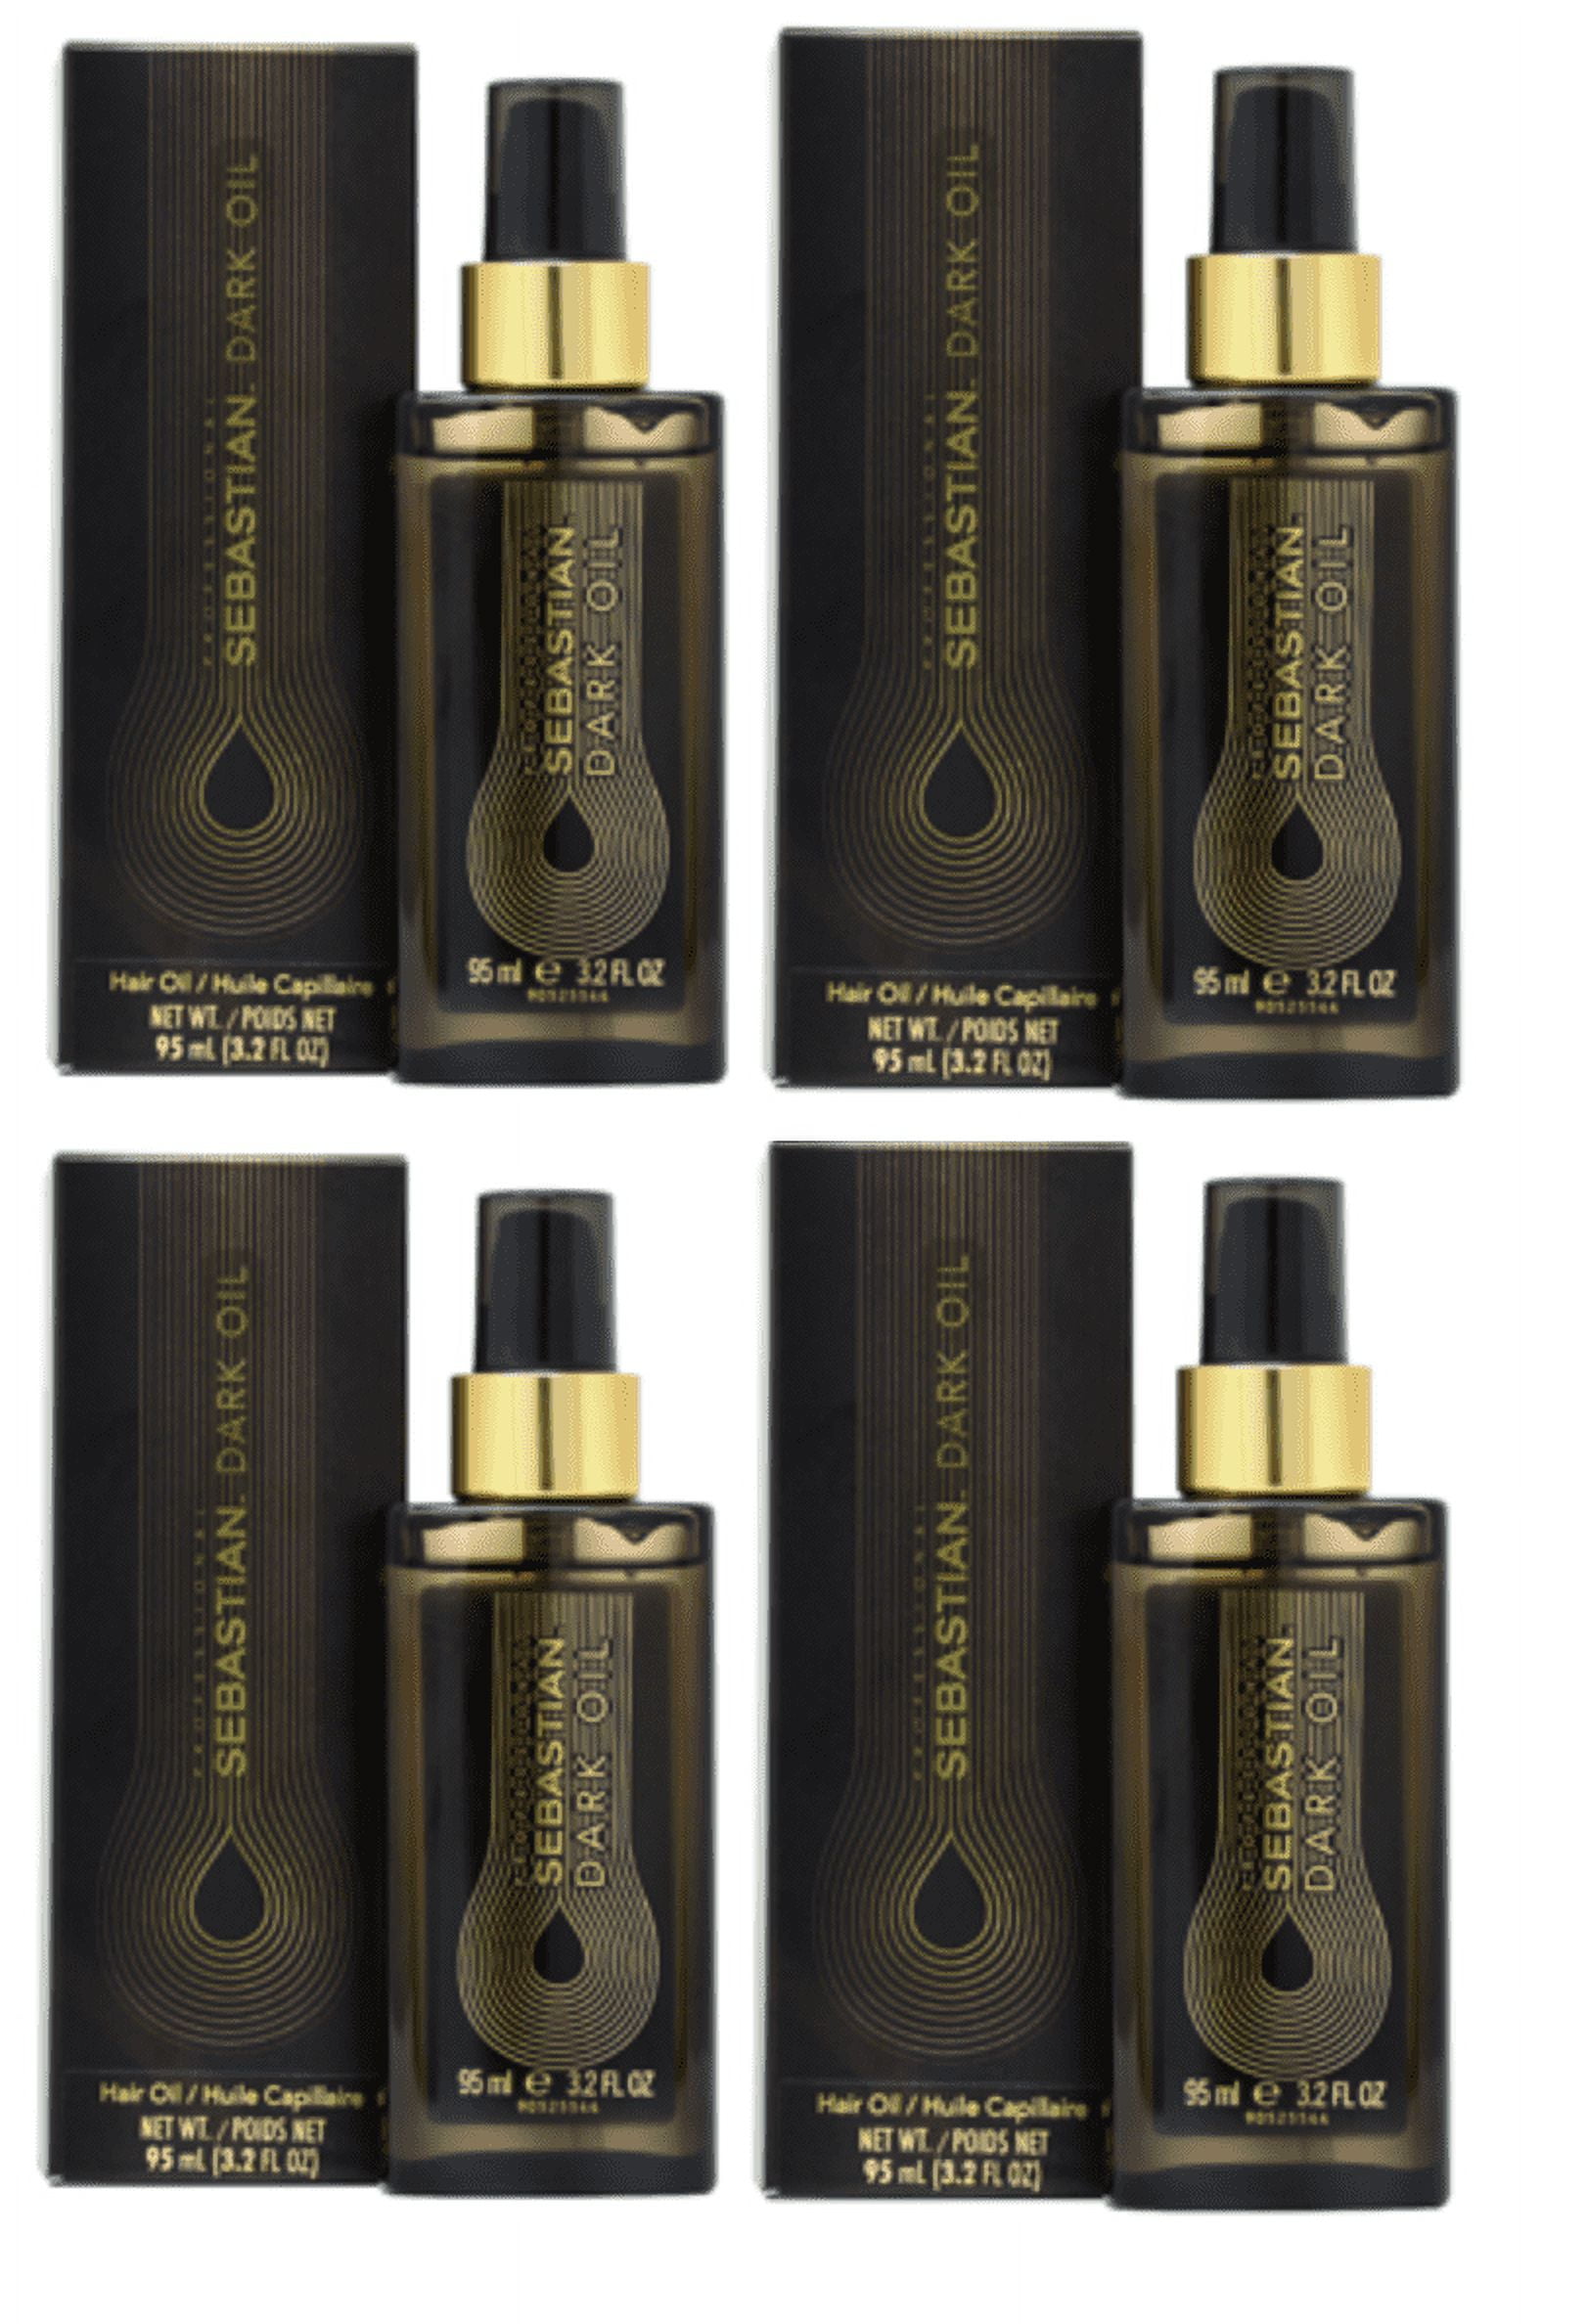 Sebastian Professional Dark Oil Body in a Bottle 3.2oz (Pack of 2)